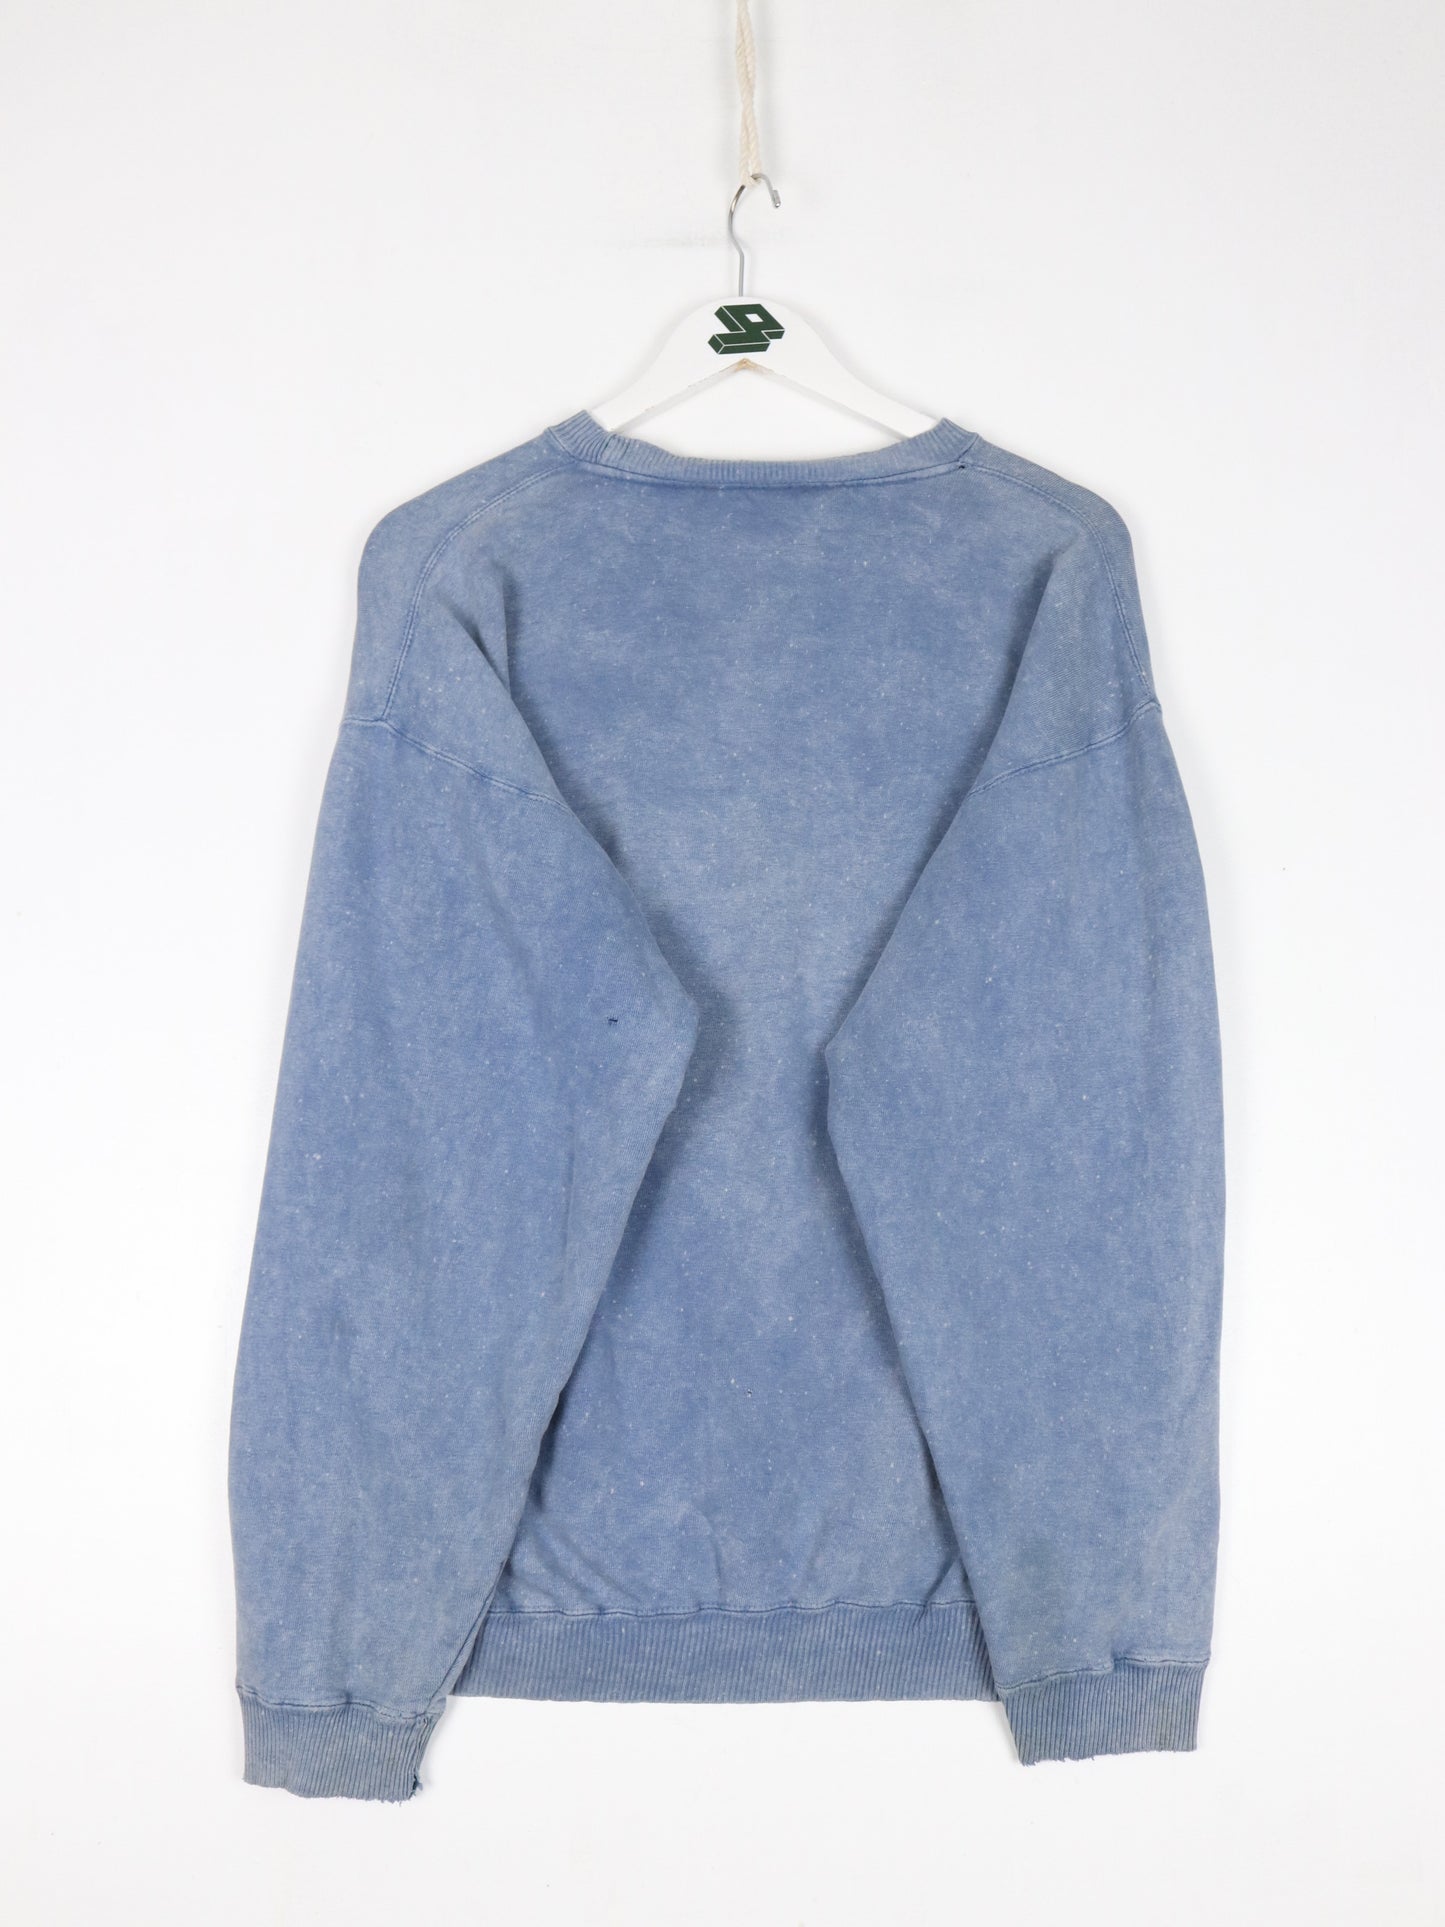 Vintage Sears Sweatshirt Mens Medium Blue Football 90s